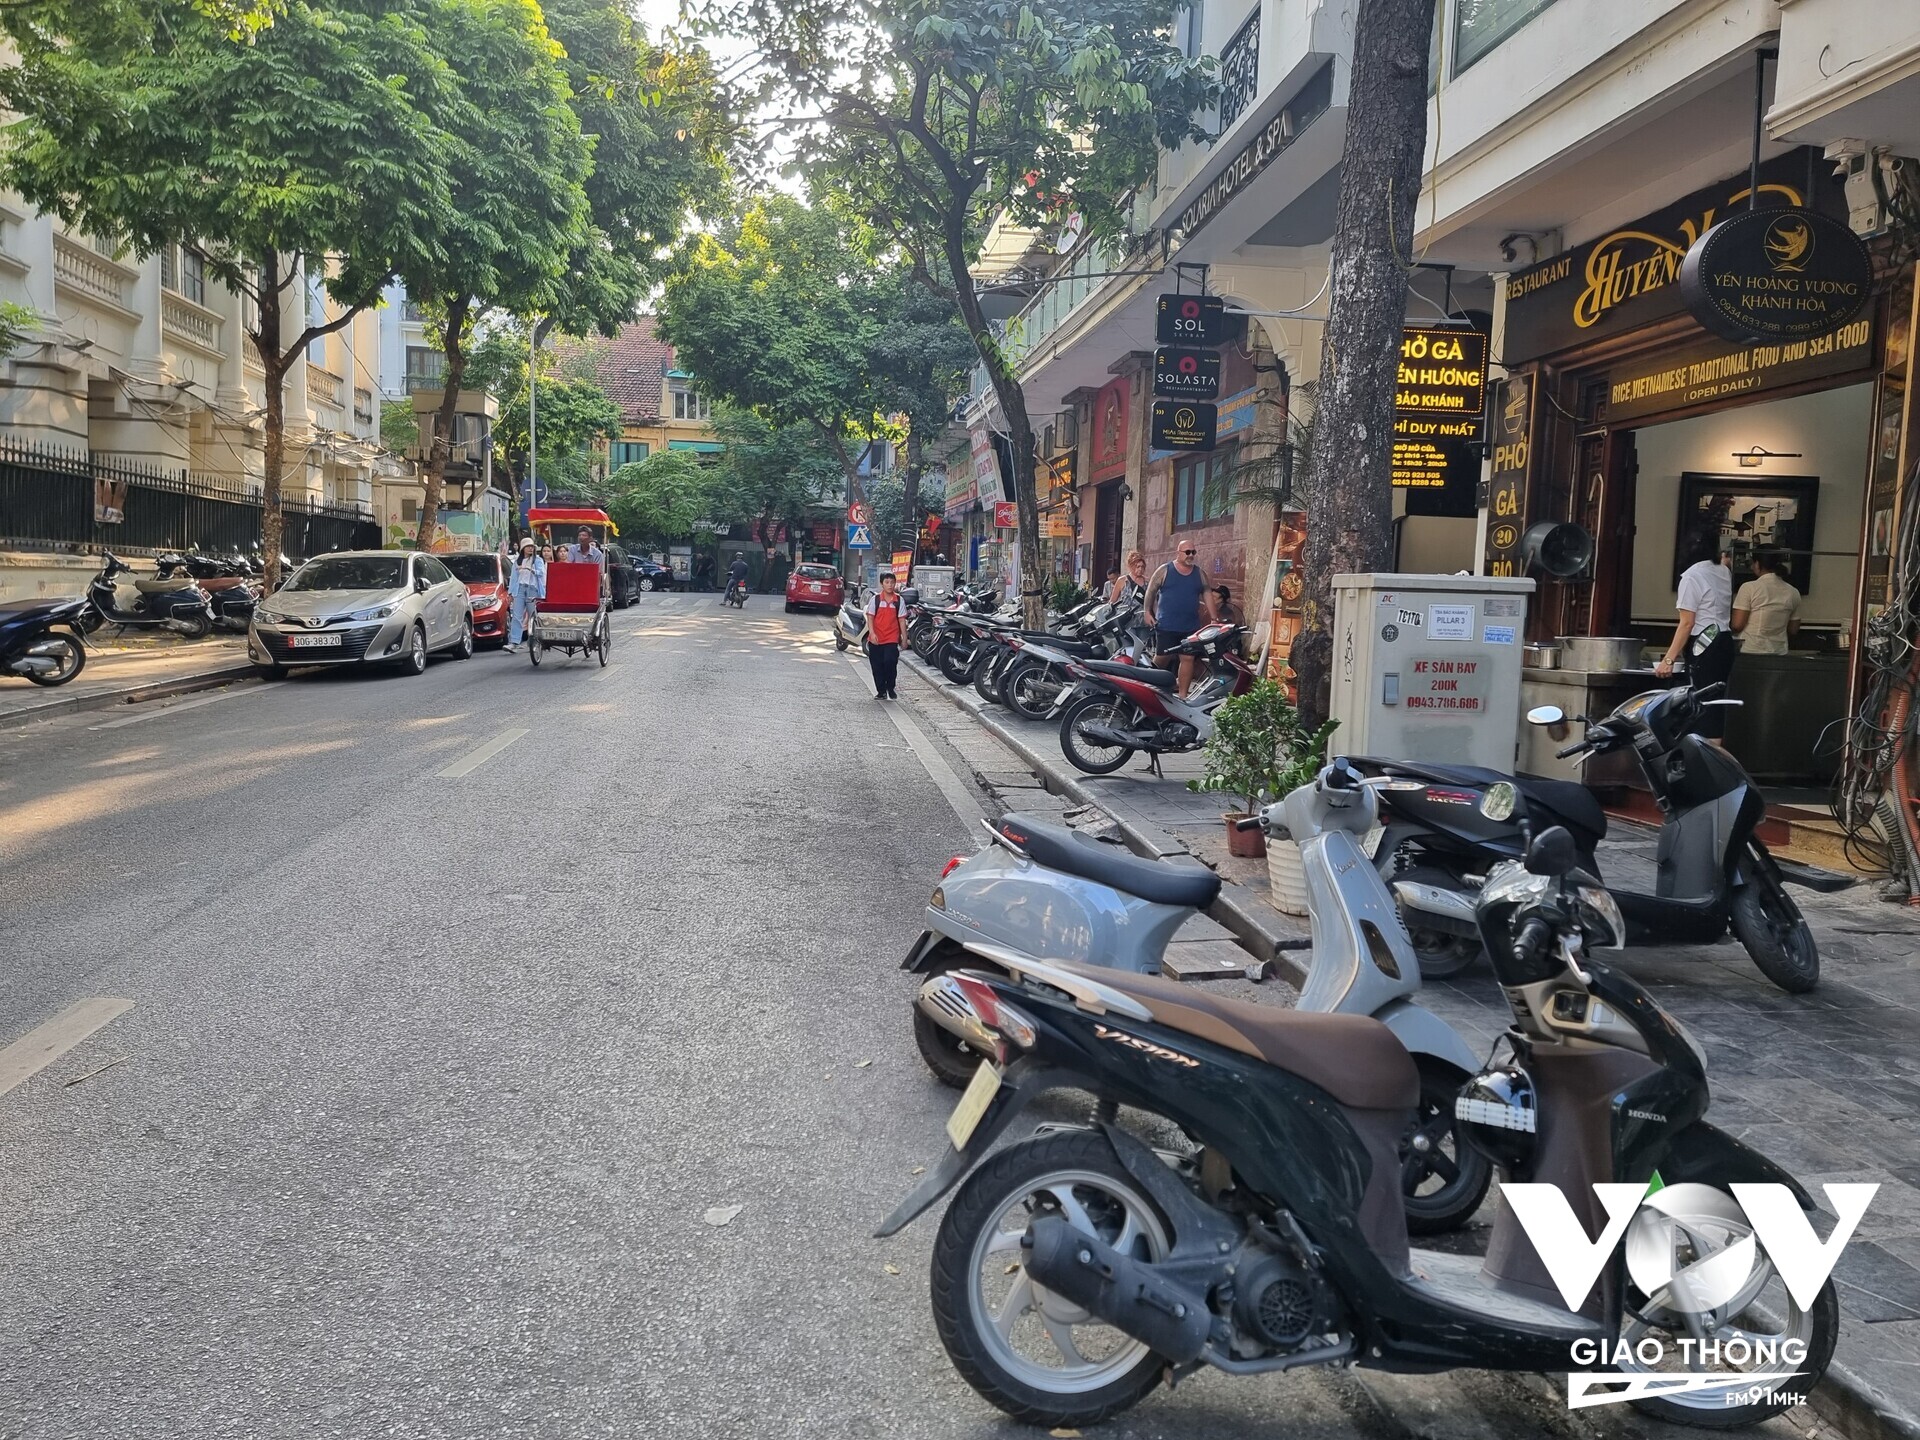 Mặc dù cách trụ sở UBND quận Hoàn Kiếm không xa, thế nhưng tại phố Bảo Khánh, từ vỉa hè đến lòng đường, hễ nơi nào còn chỗ trống thì nơi đó trở thành chỗ để ô tô, xe máy của các hàng quán kinh doanh, thậm chí dựng ngang xe máy dưới lòng đường.